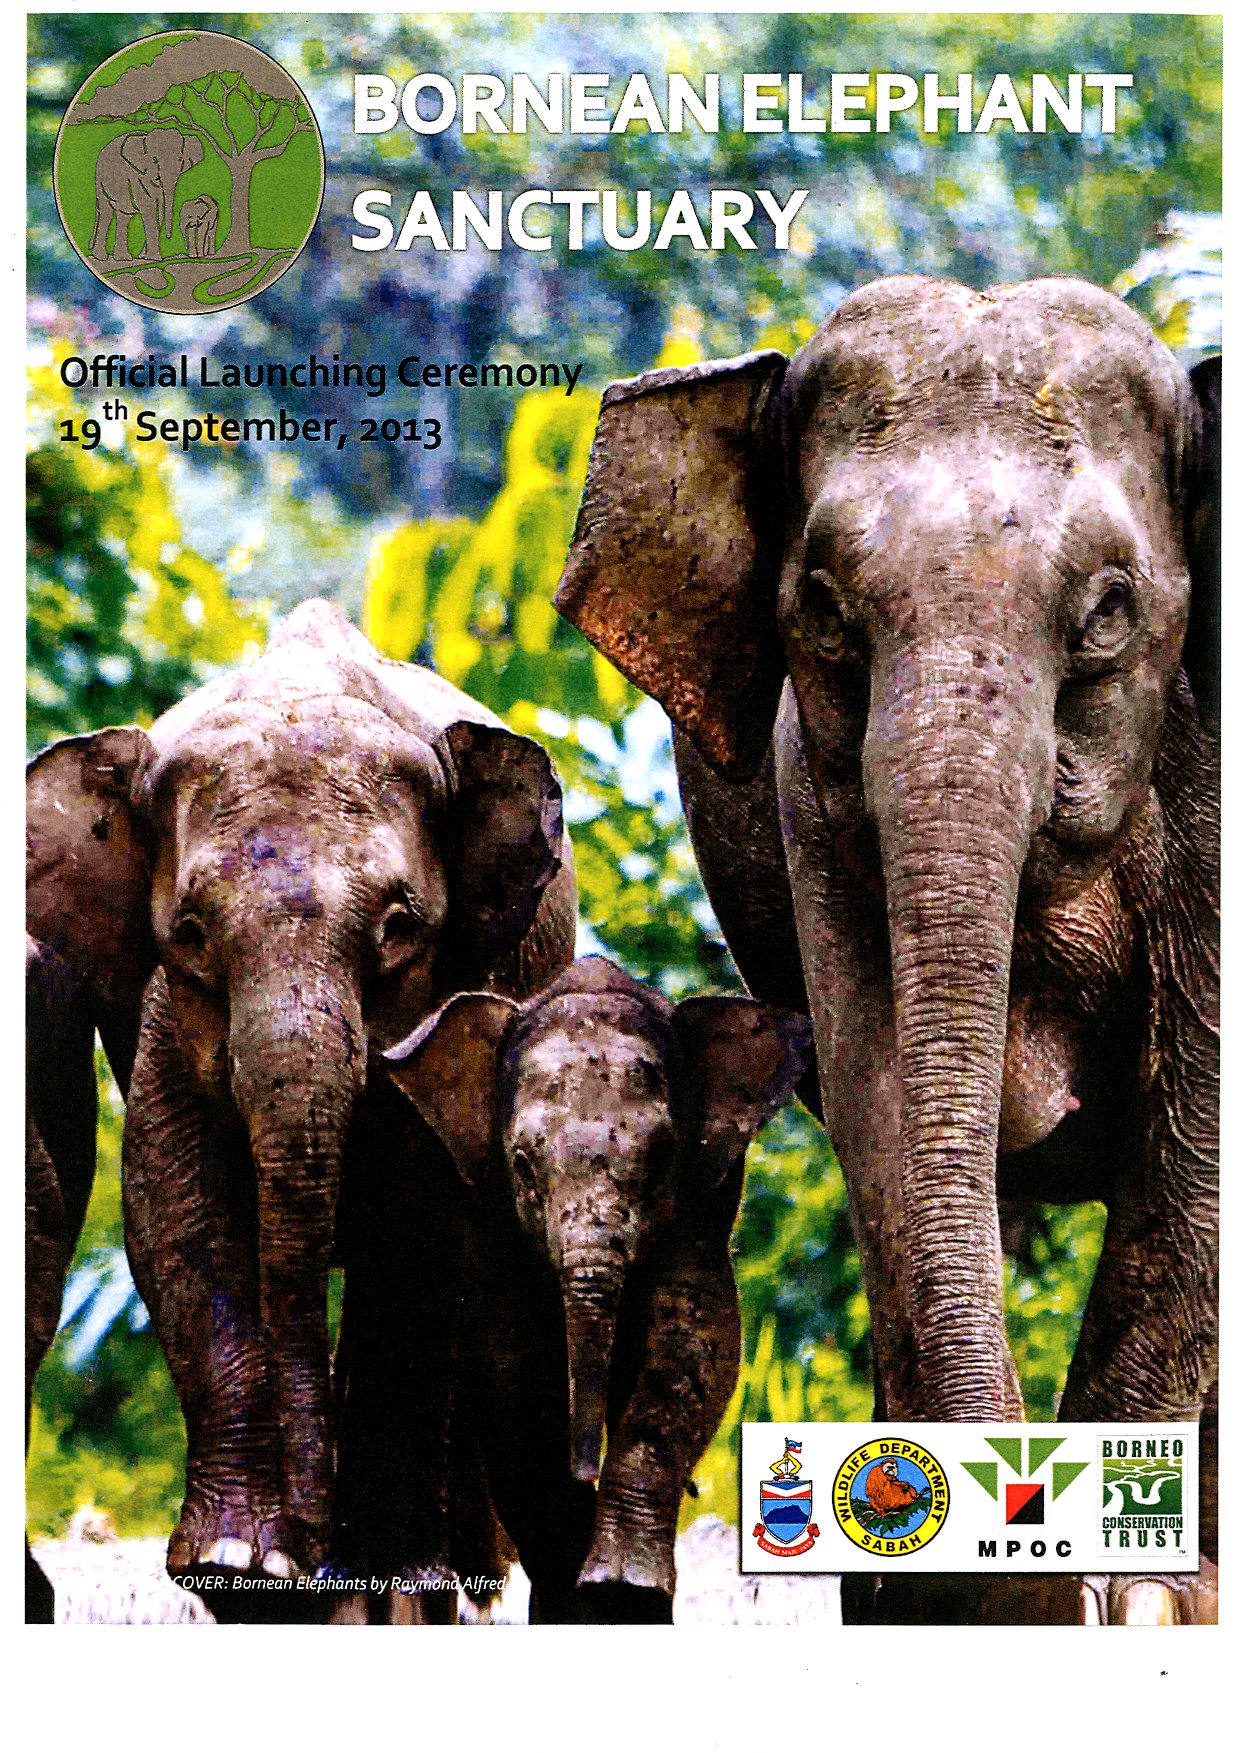 BorneonElephant Sanctuary